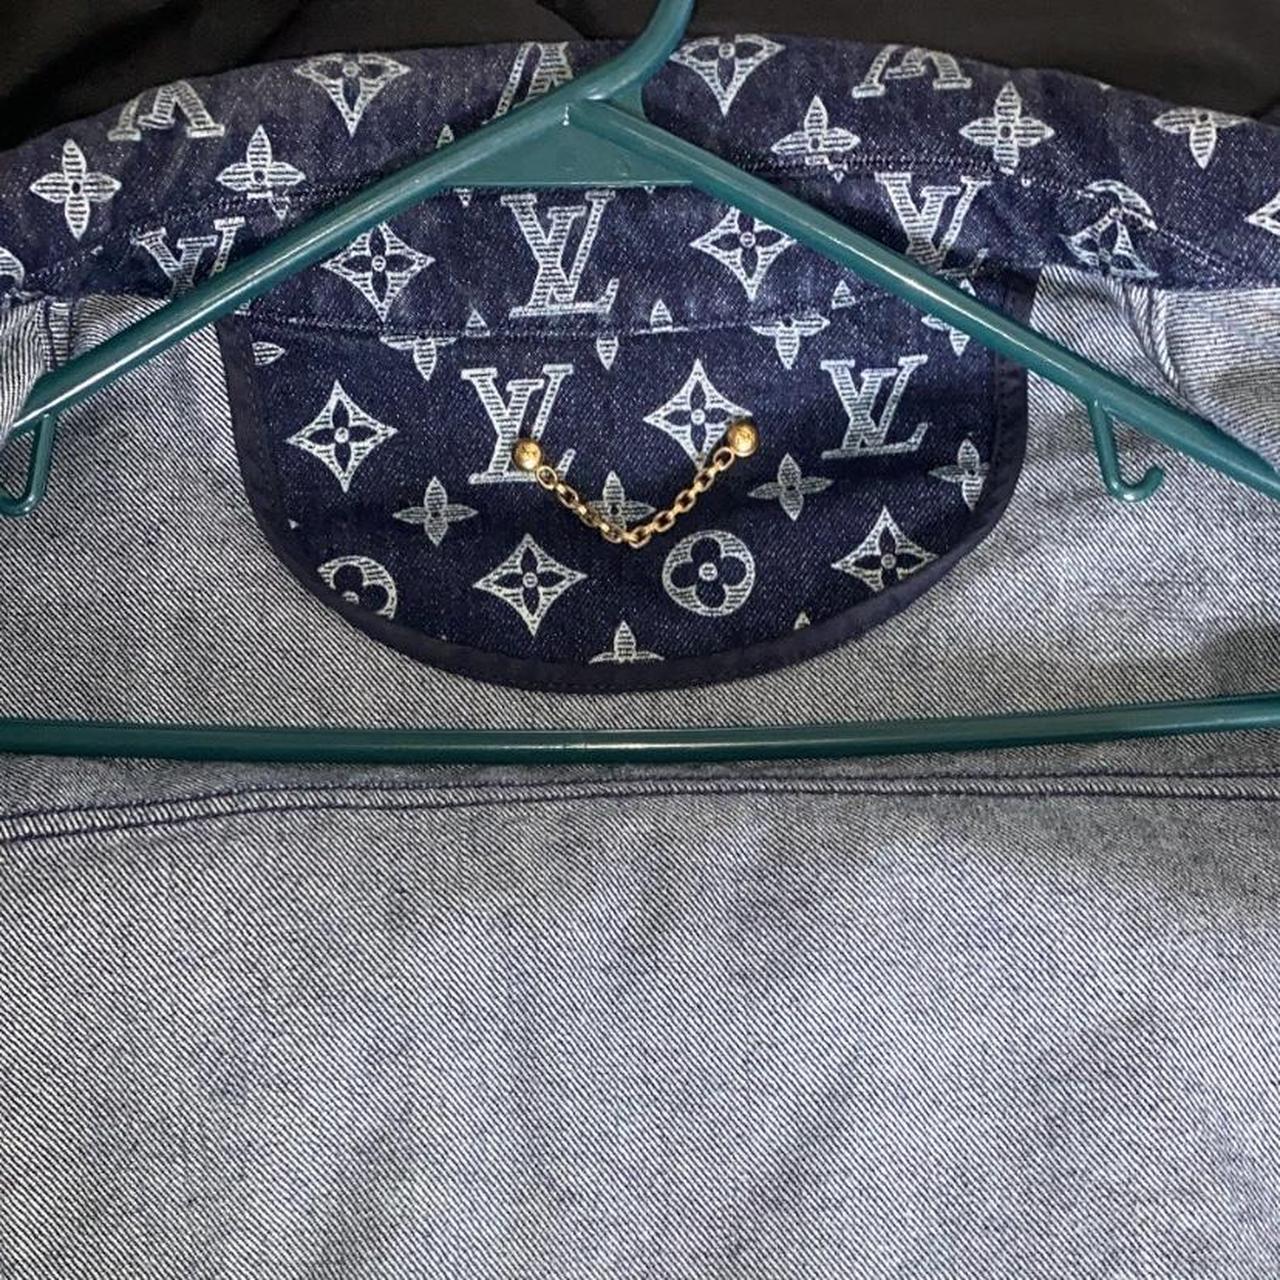 Louis Vuitton Kim Jones Monogram Denim Jacket (Large) at 1stDibs